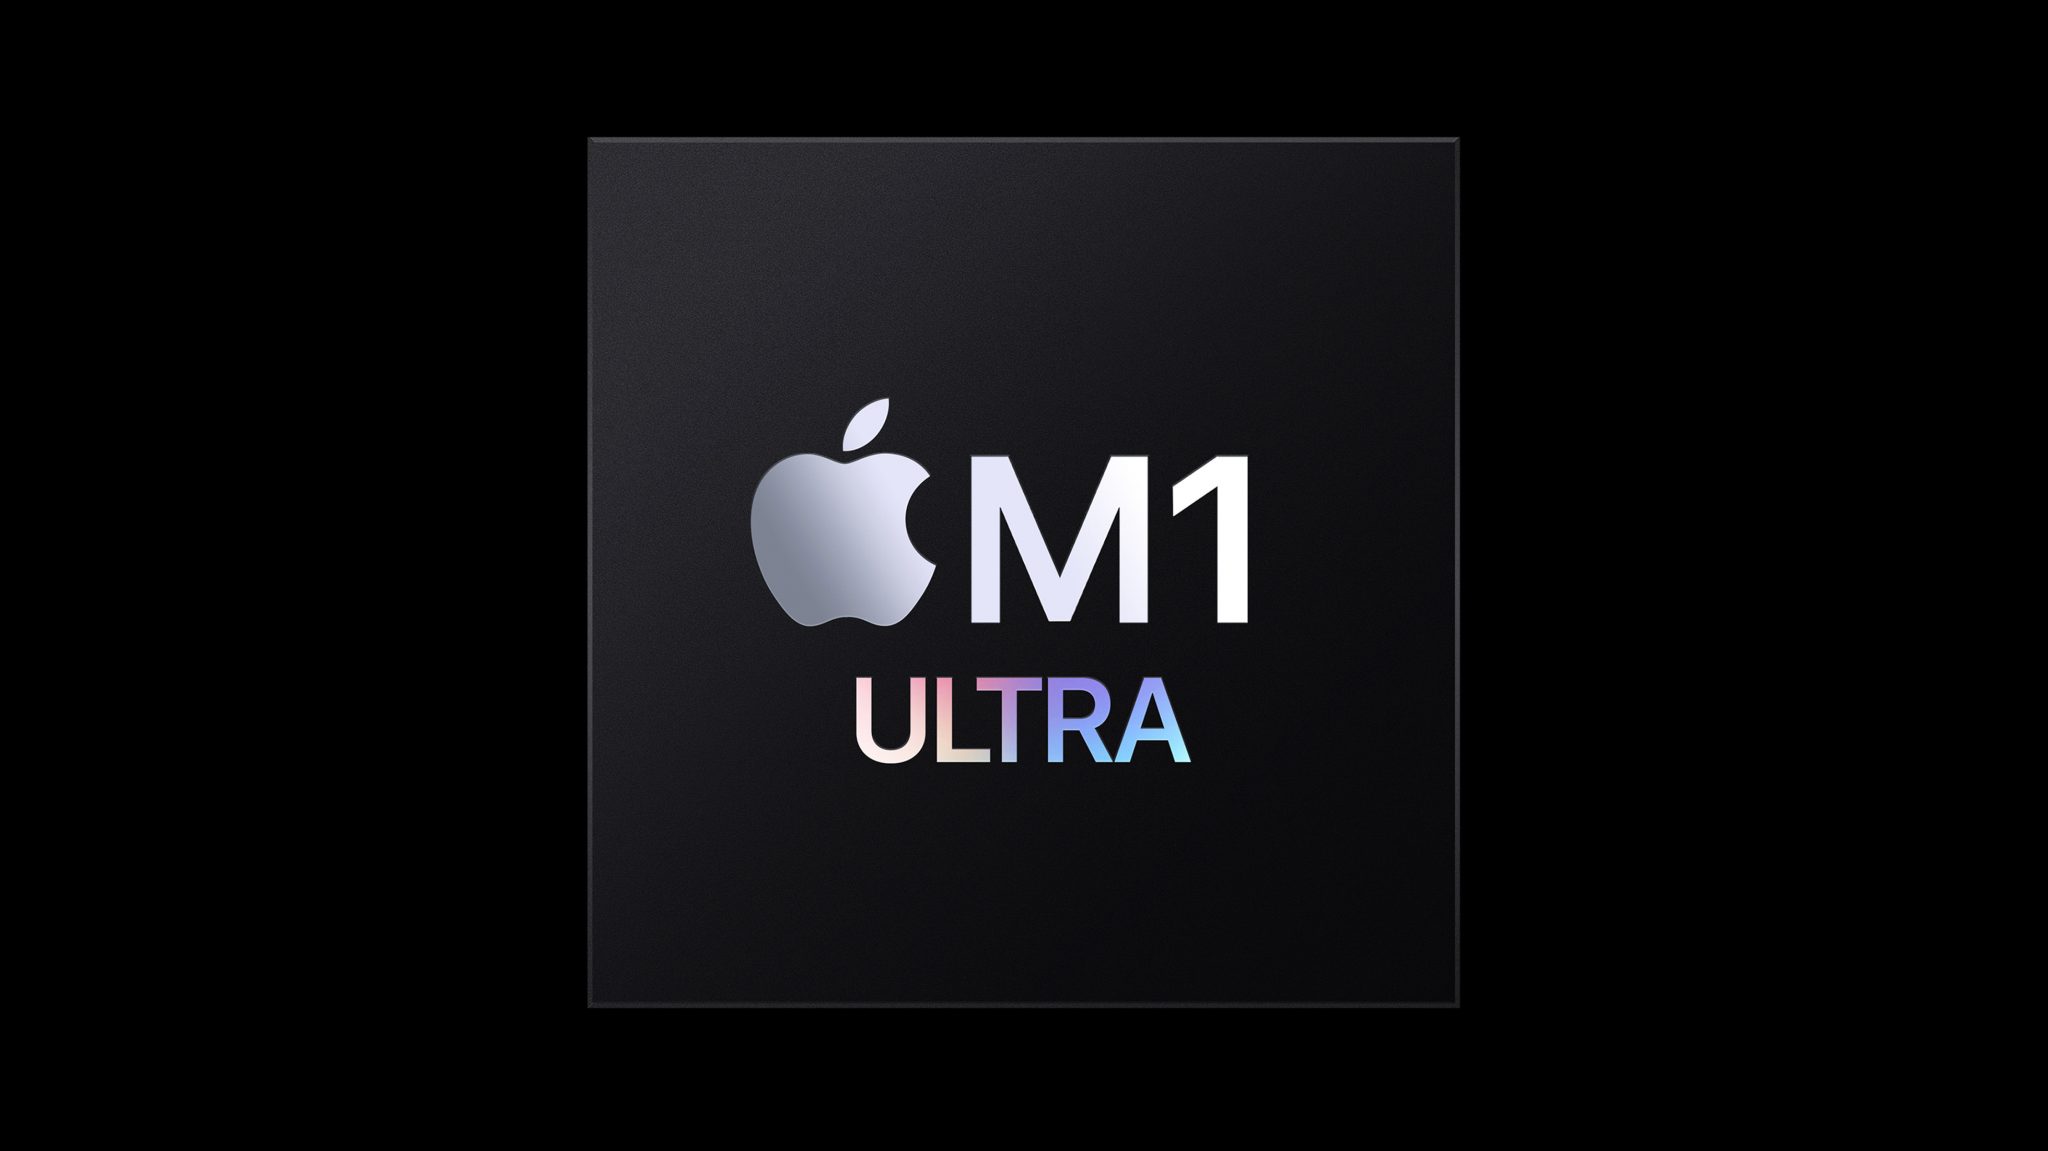 ลือ Apple มี Mac Pro M1 พร้อมขายมาร่วมเดือนแล้ว แต่รอทำของแรงกว่านี้